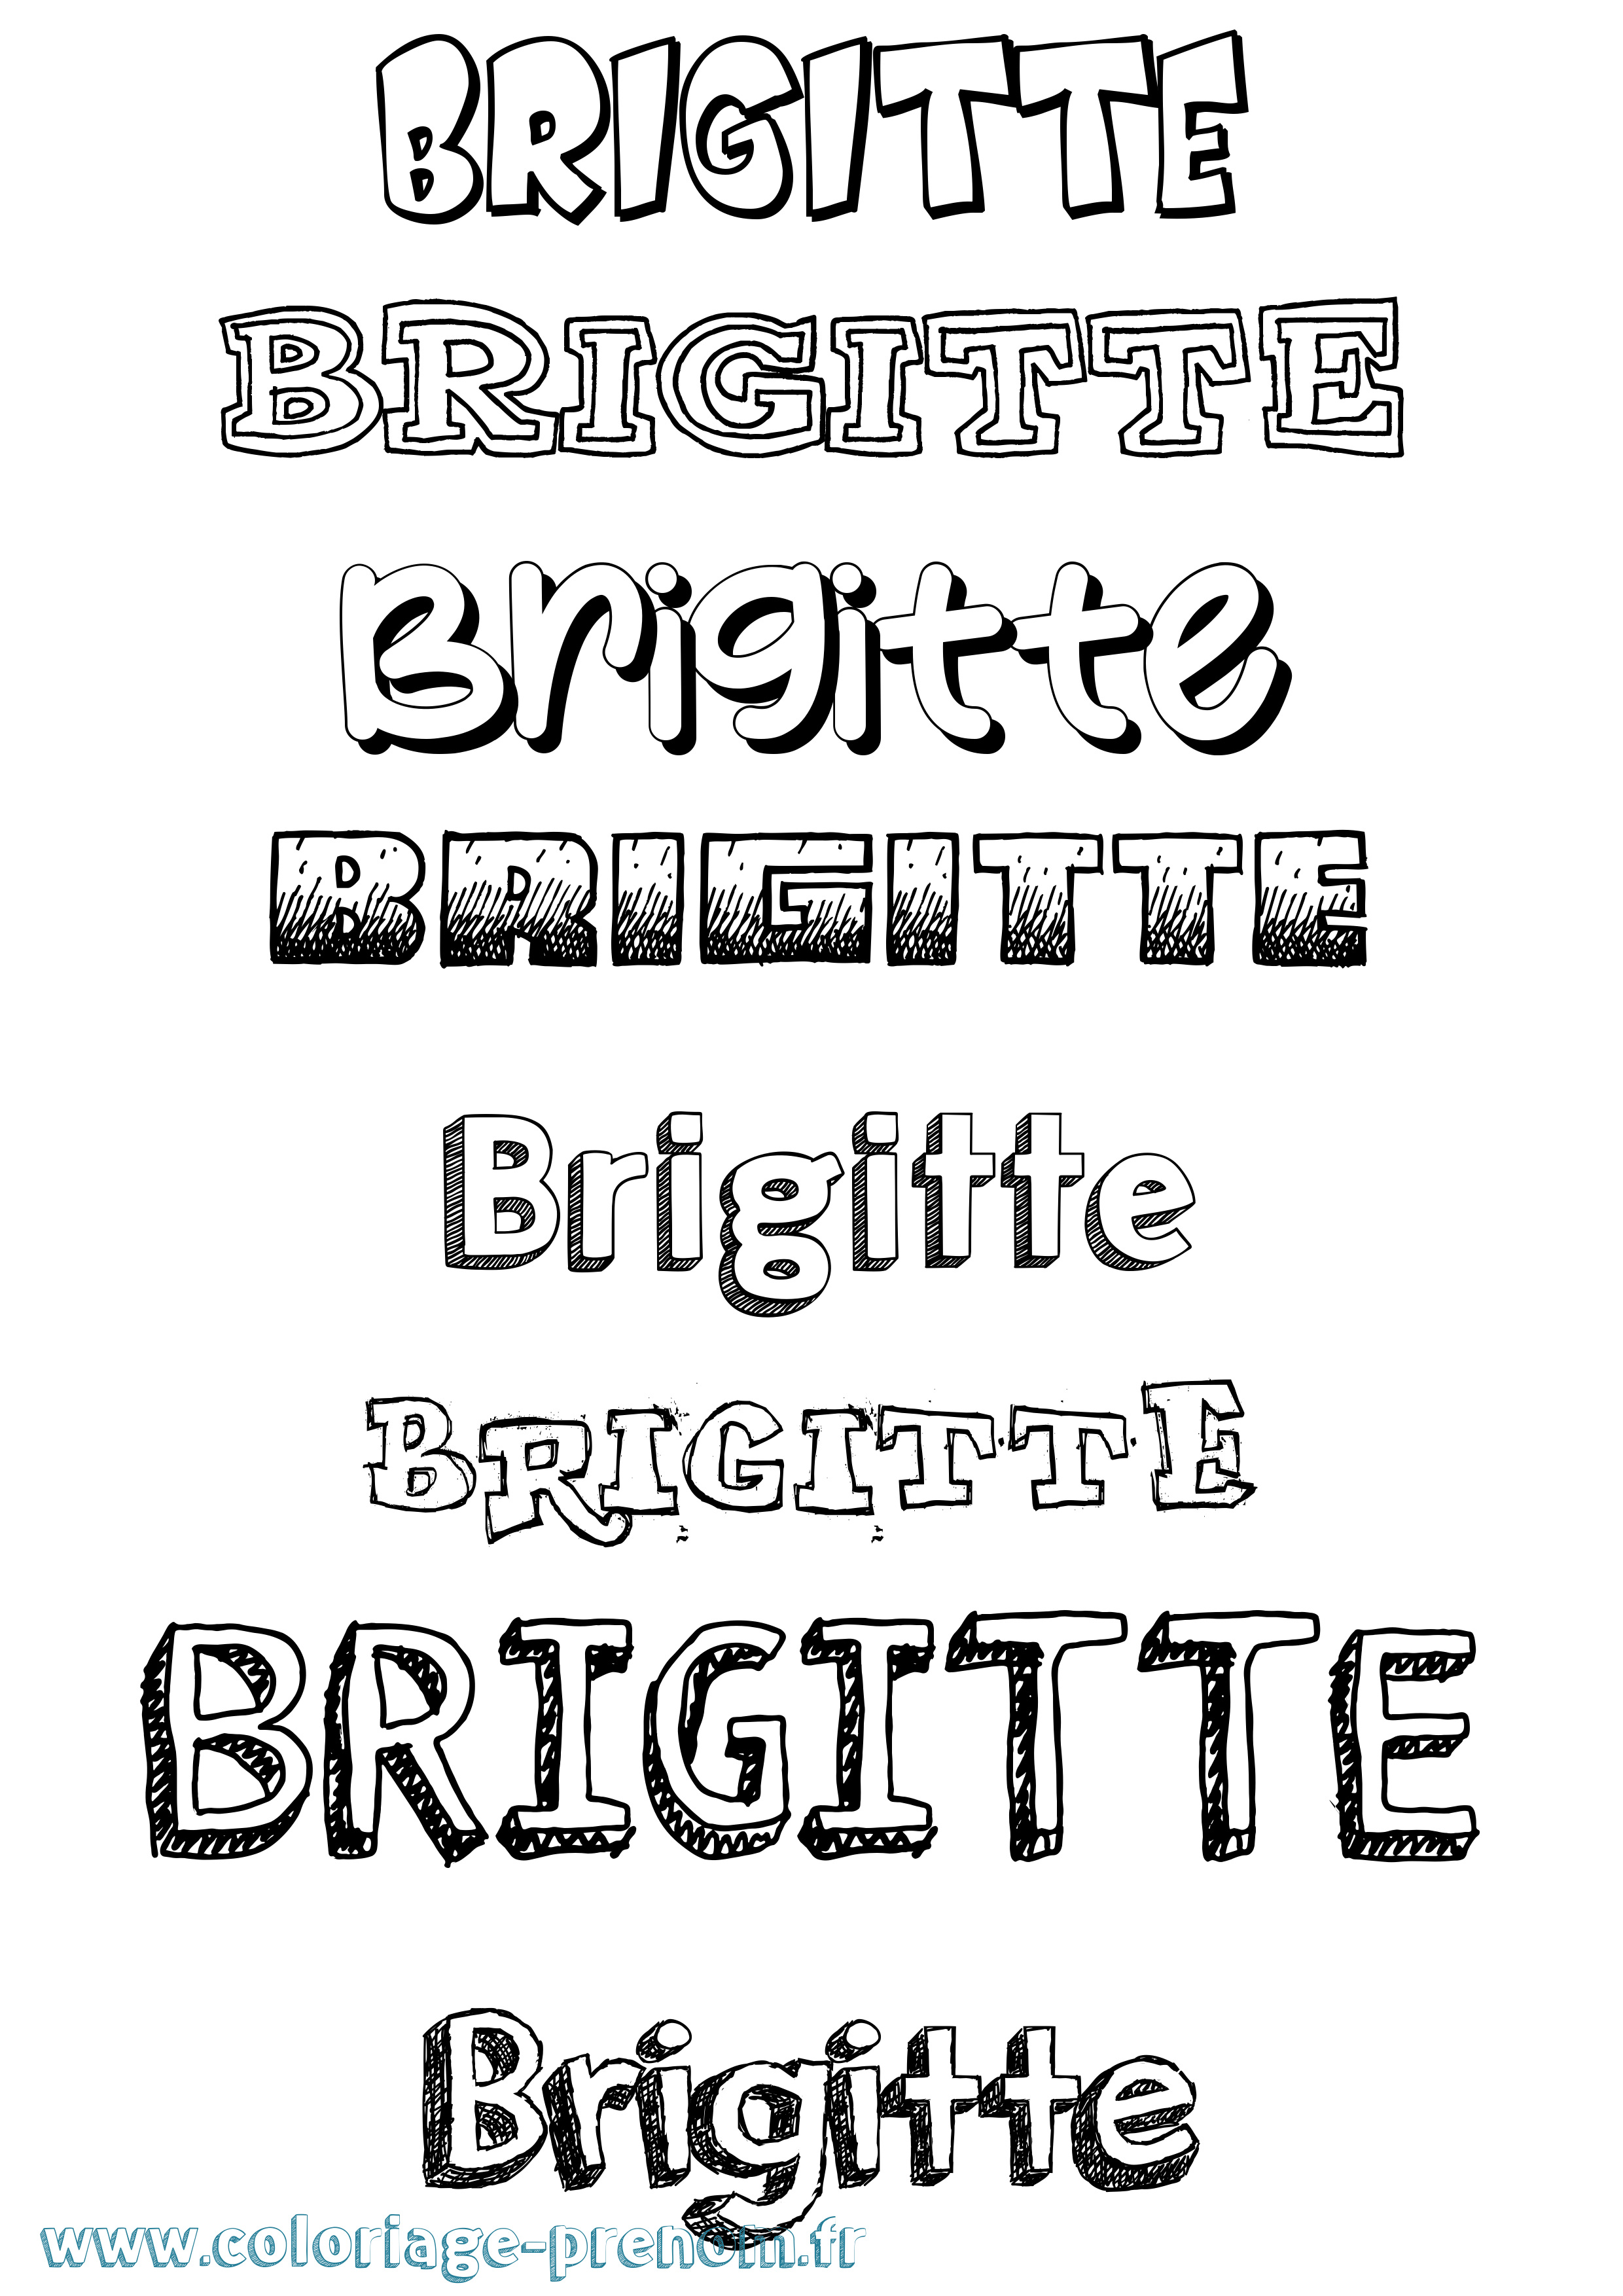 Coloriage prénom Brigitte